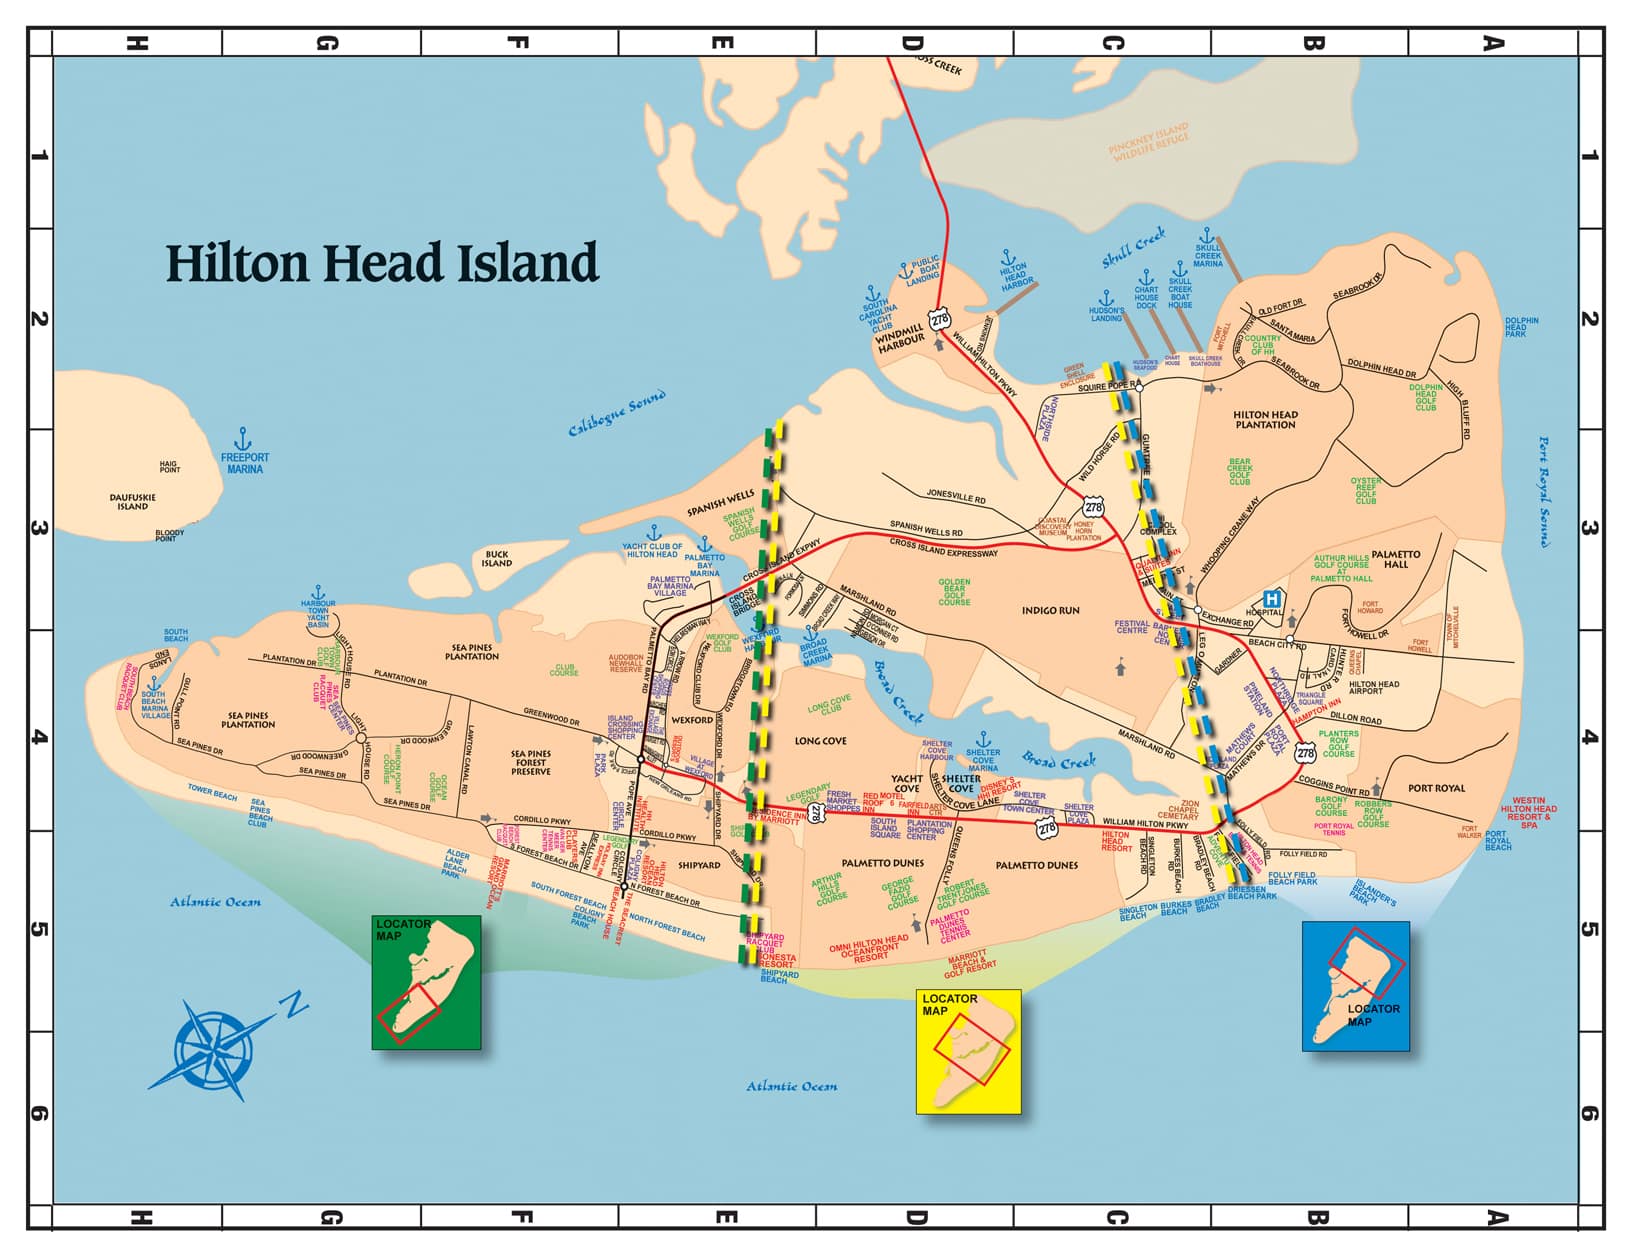 Island Club Hilton Head: A Luxurious Getaway on the South Carolina Coast